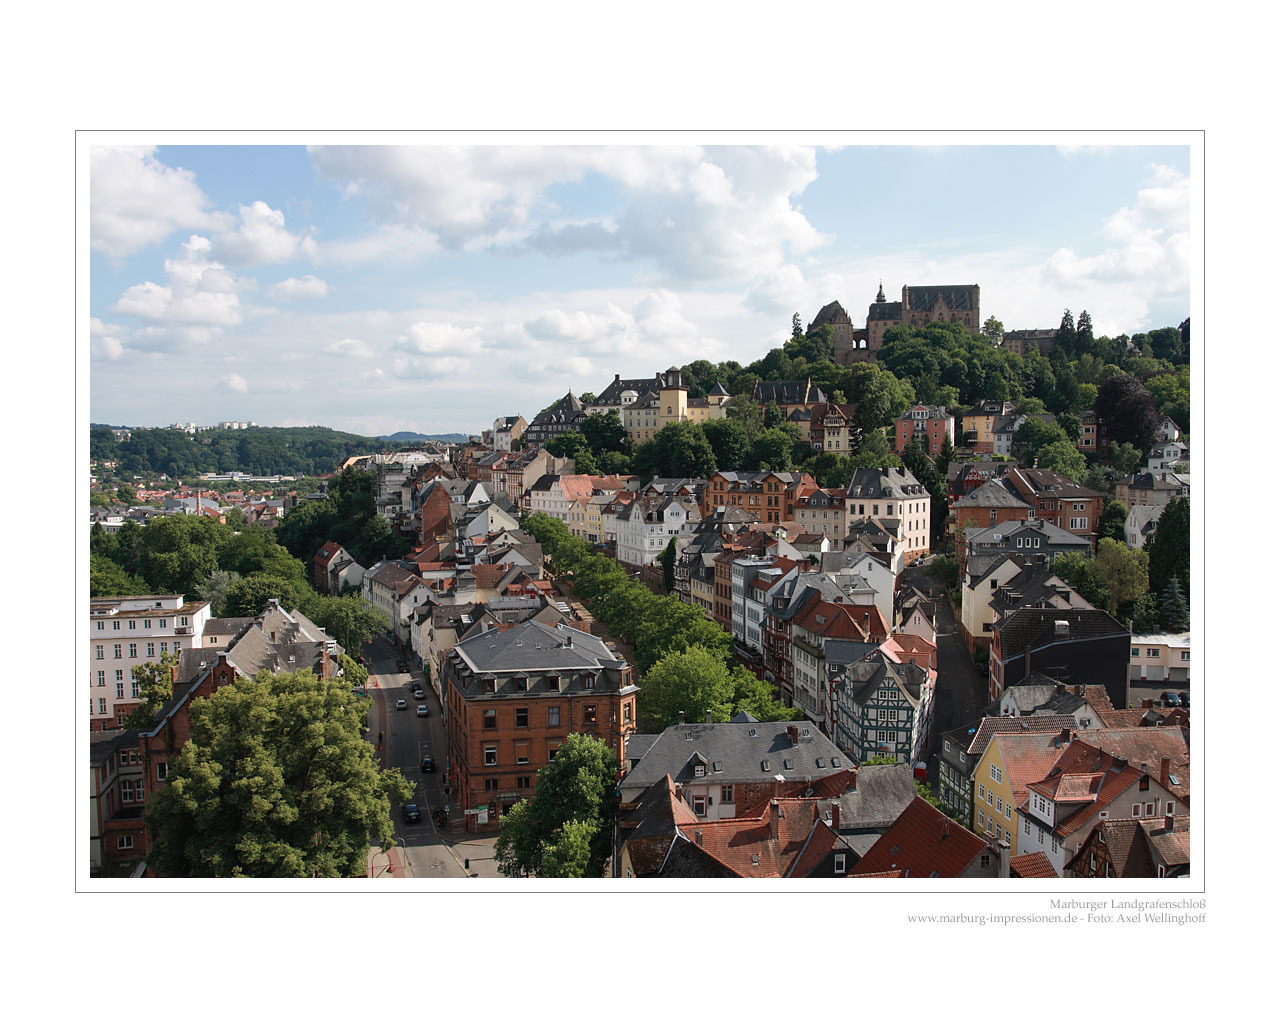 Blick auf das Marburger Schlo